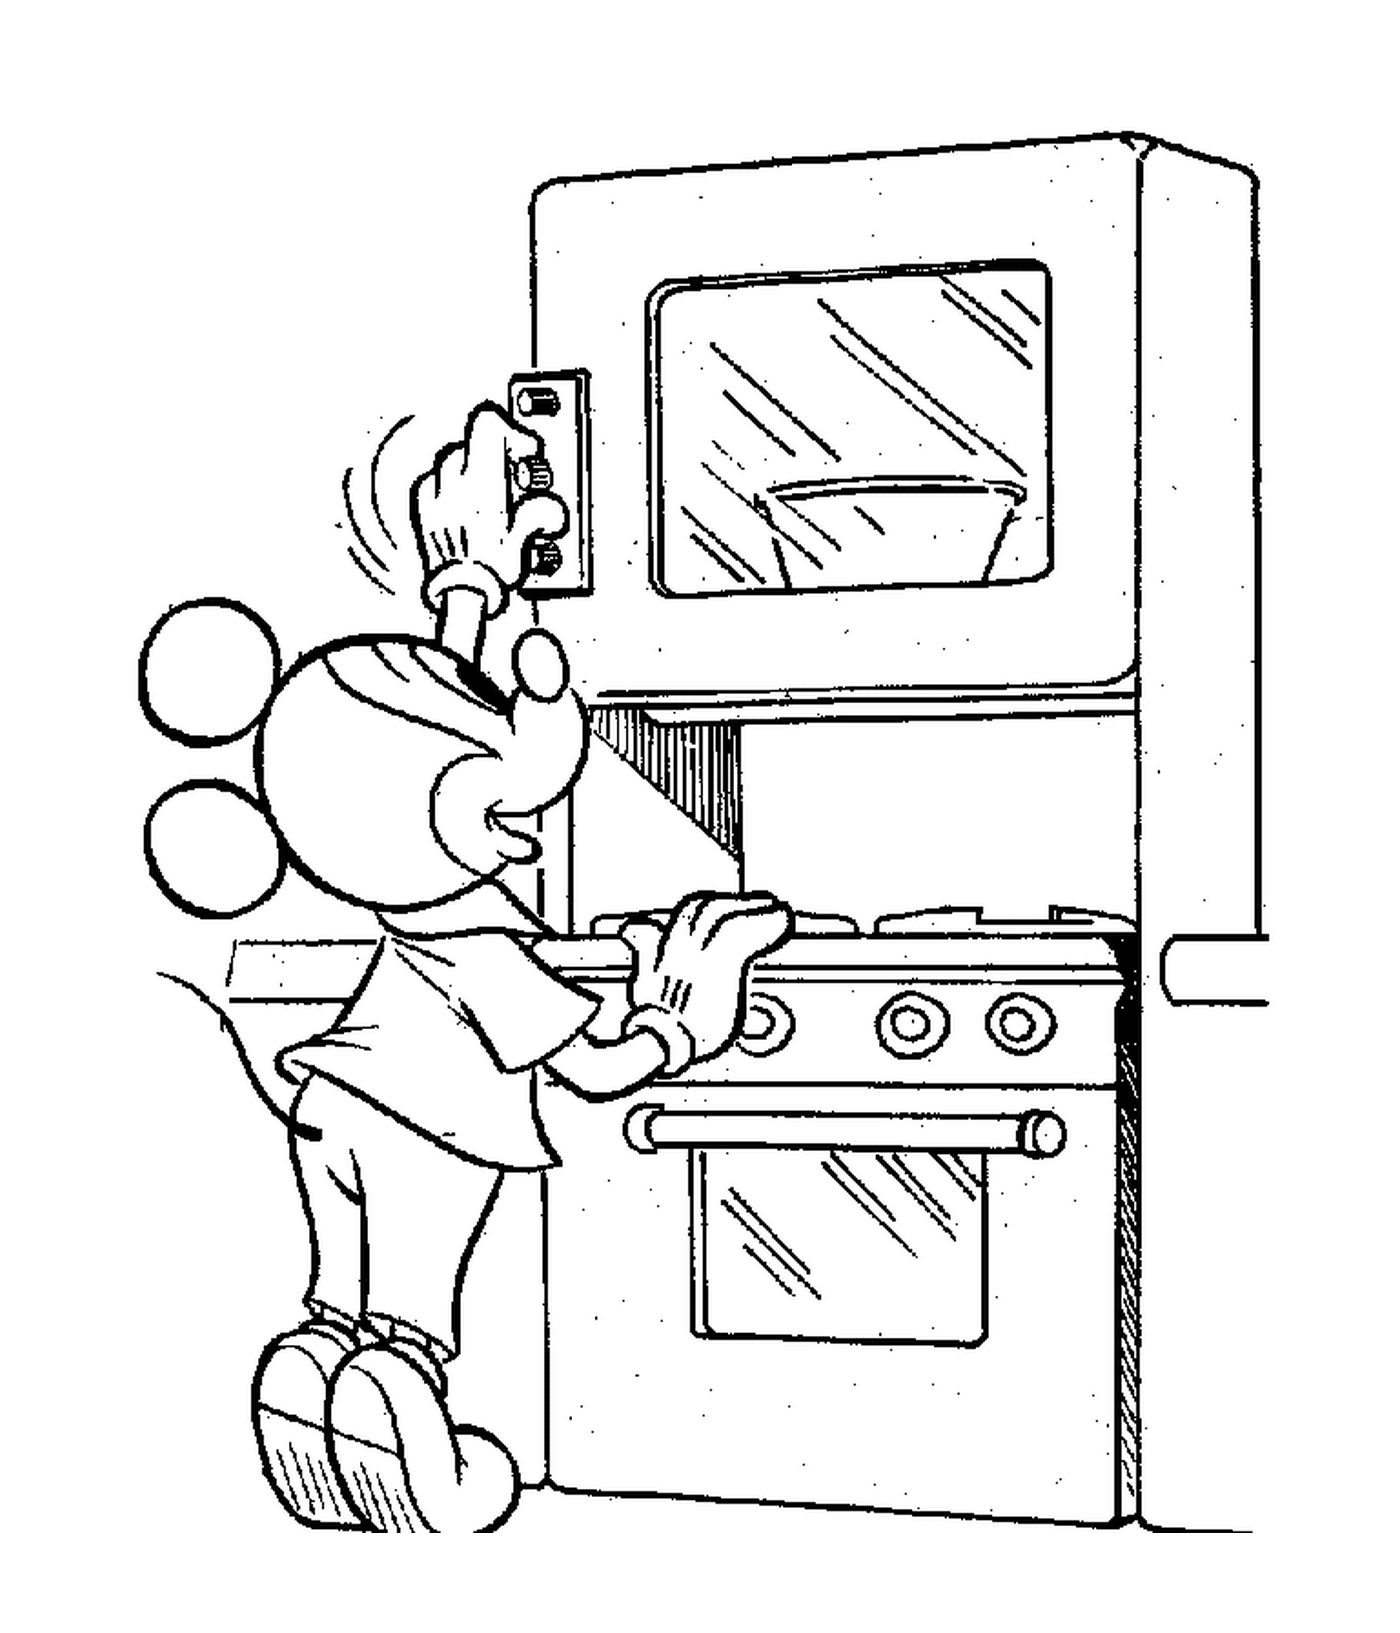  Mickey enciende su horno: personaje de dibujos animados cocinando en una cocina 